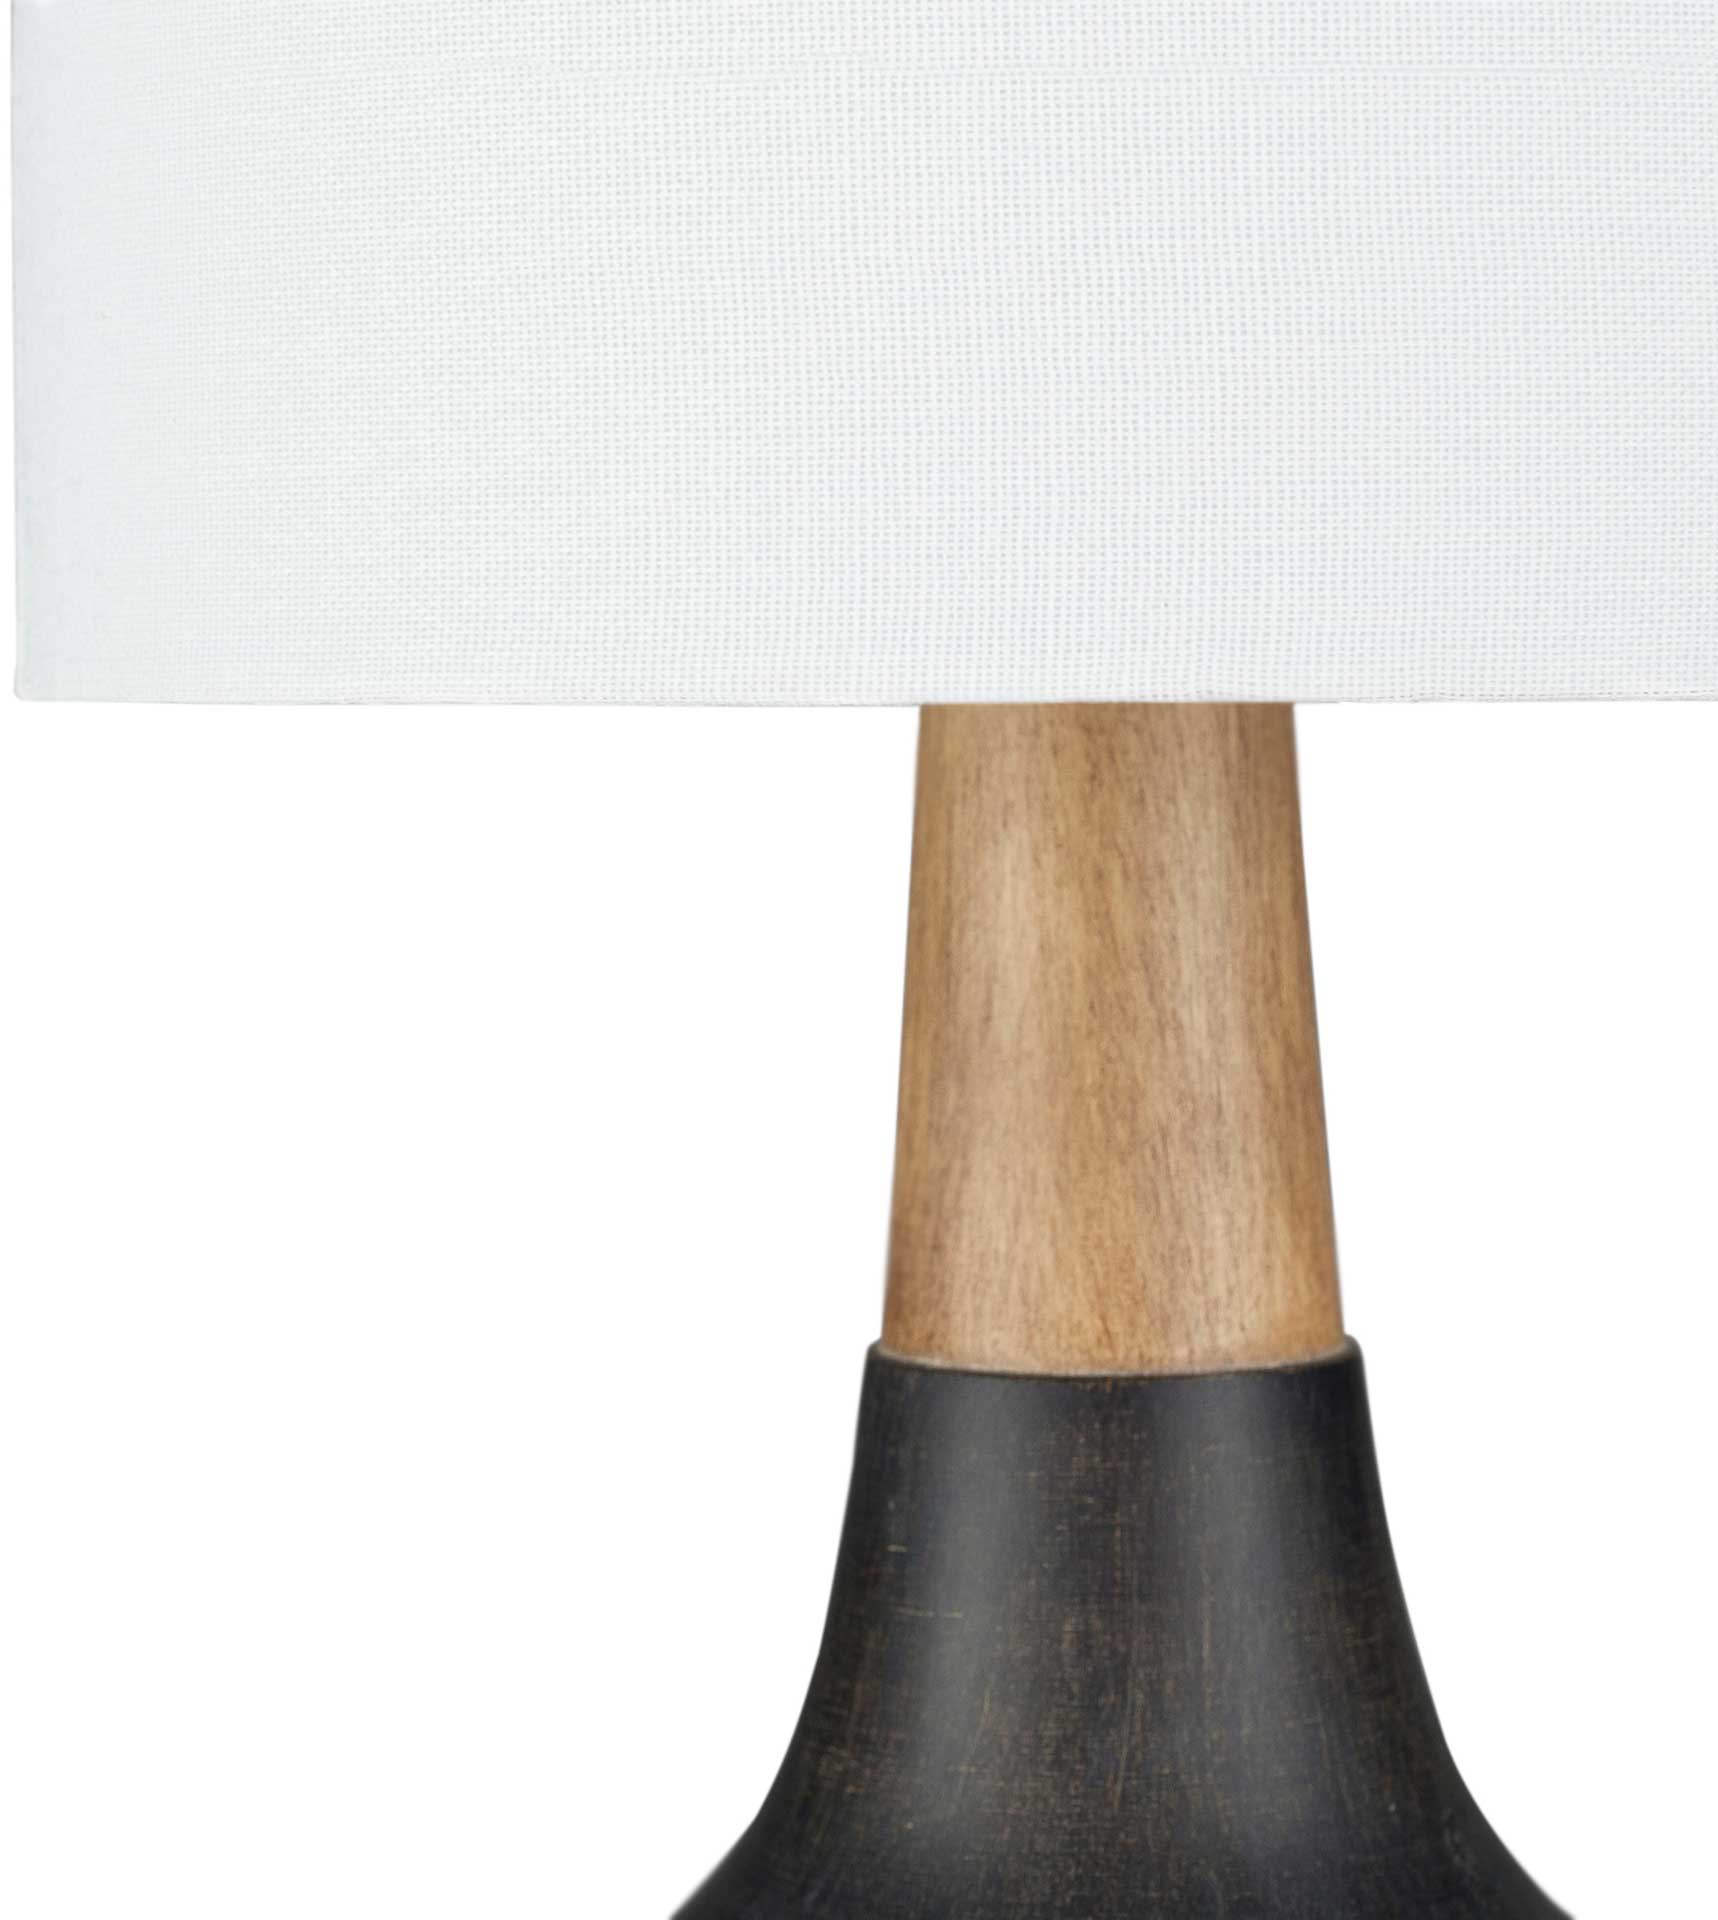 Keaton Table Lamp Black/White/Natural